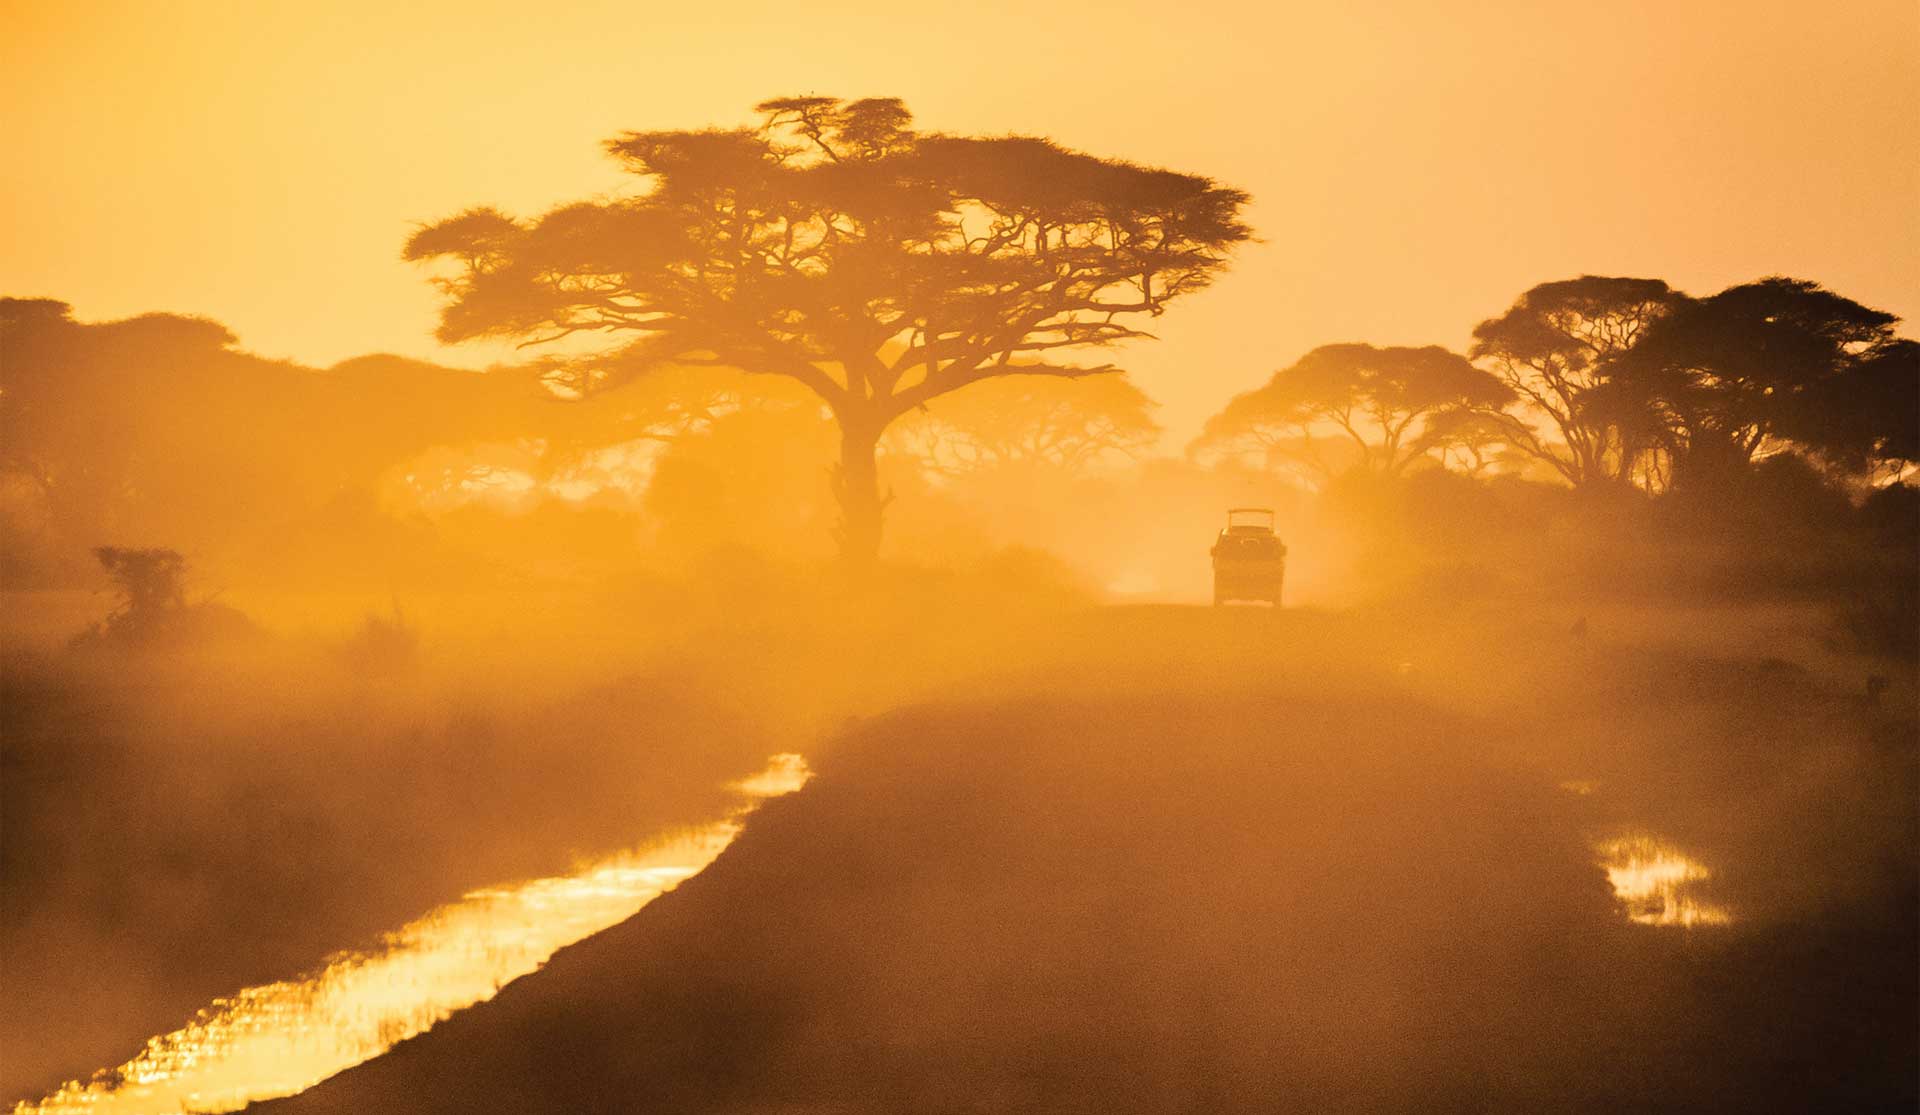 Sunset-game-drive-in-Tanzania